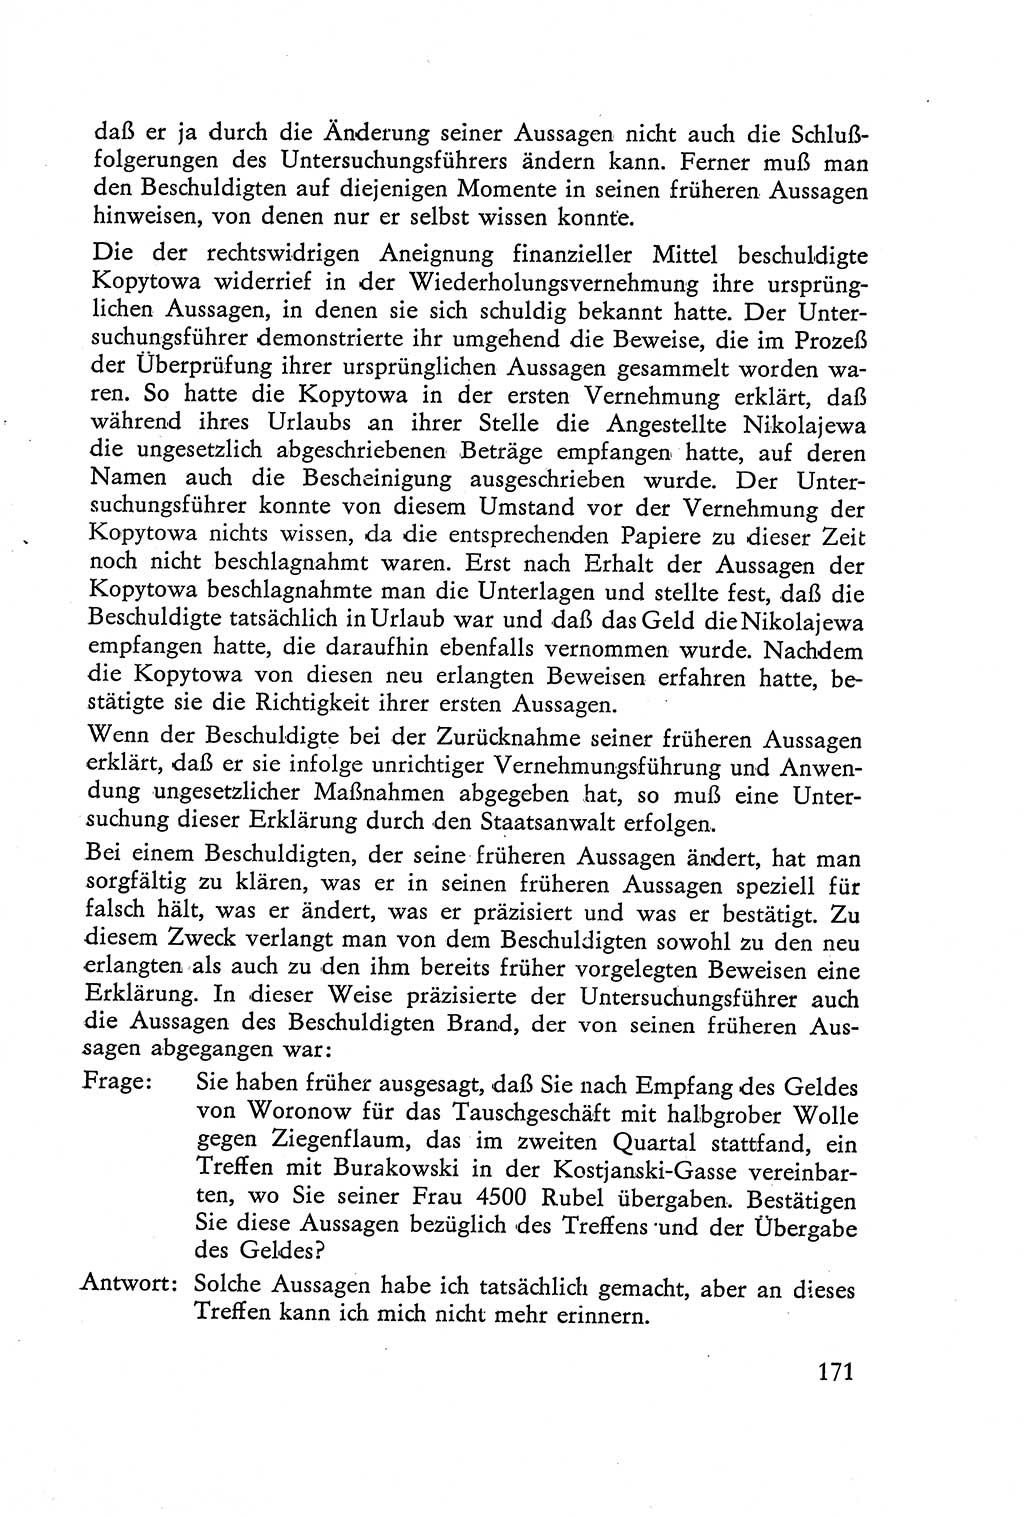 Die Vernehmung [Deutsche Demokratische Republik (DDR)] 1960, Seite 171 (Vern. DDR 1960, S. 171)